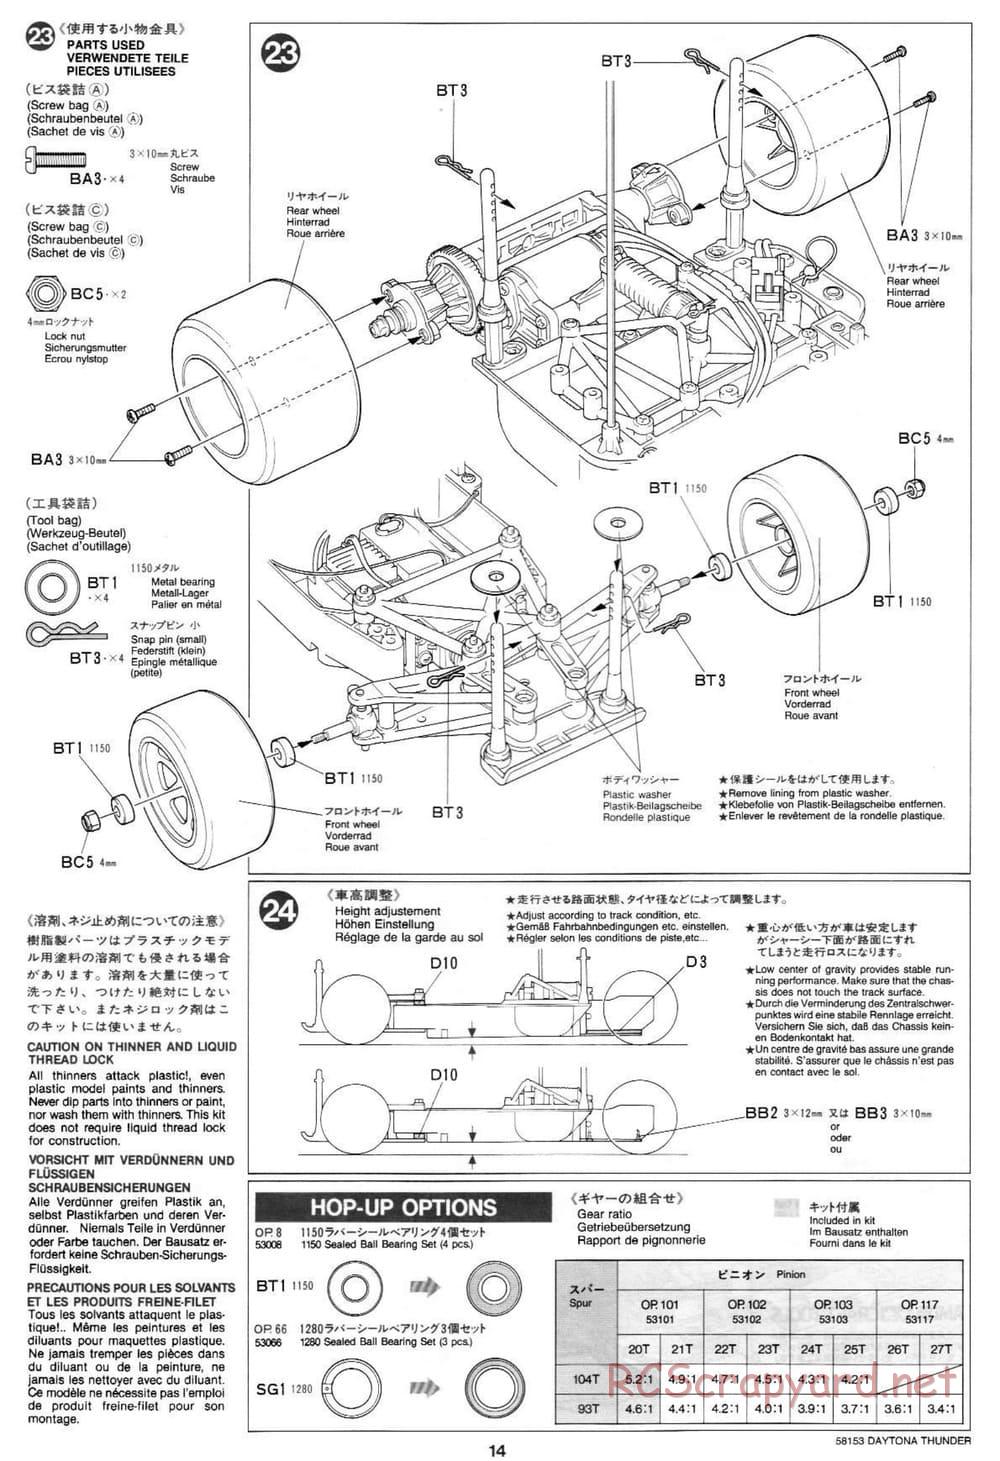 Tamiya - Daytona Thunder - Group-C Chassis - Manual - Page 14